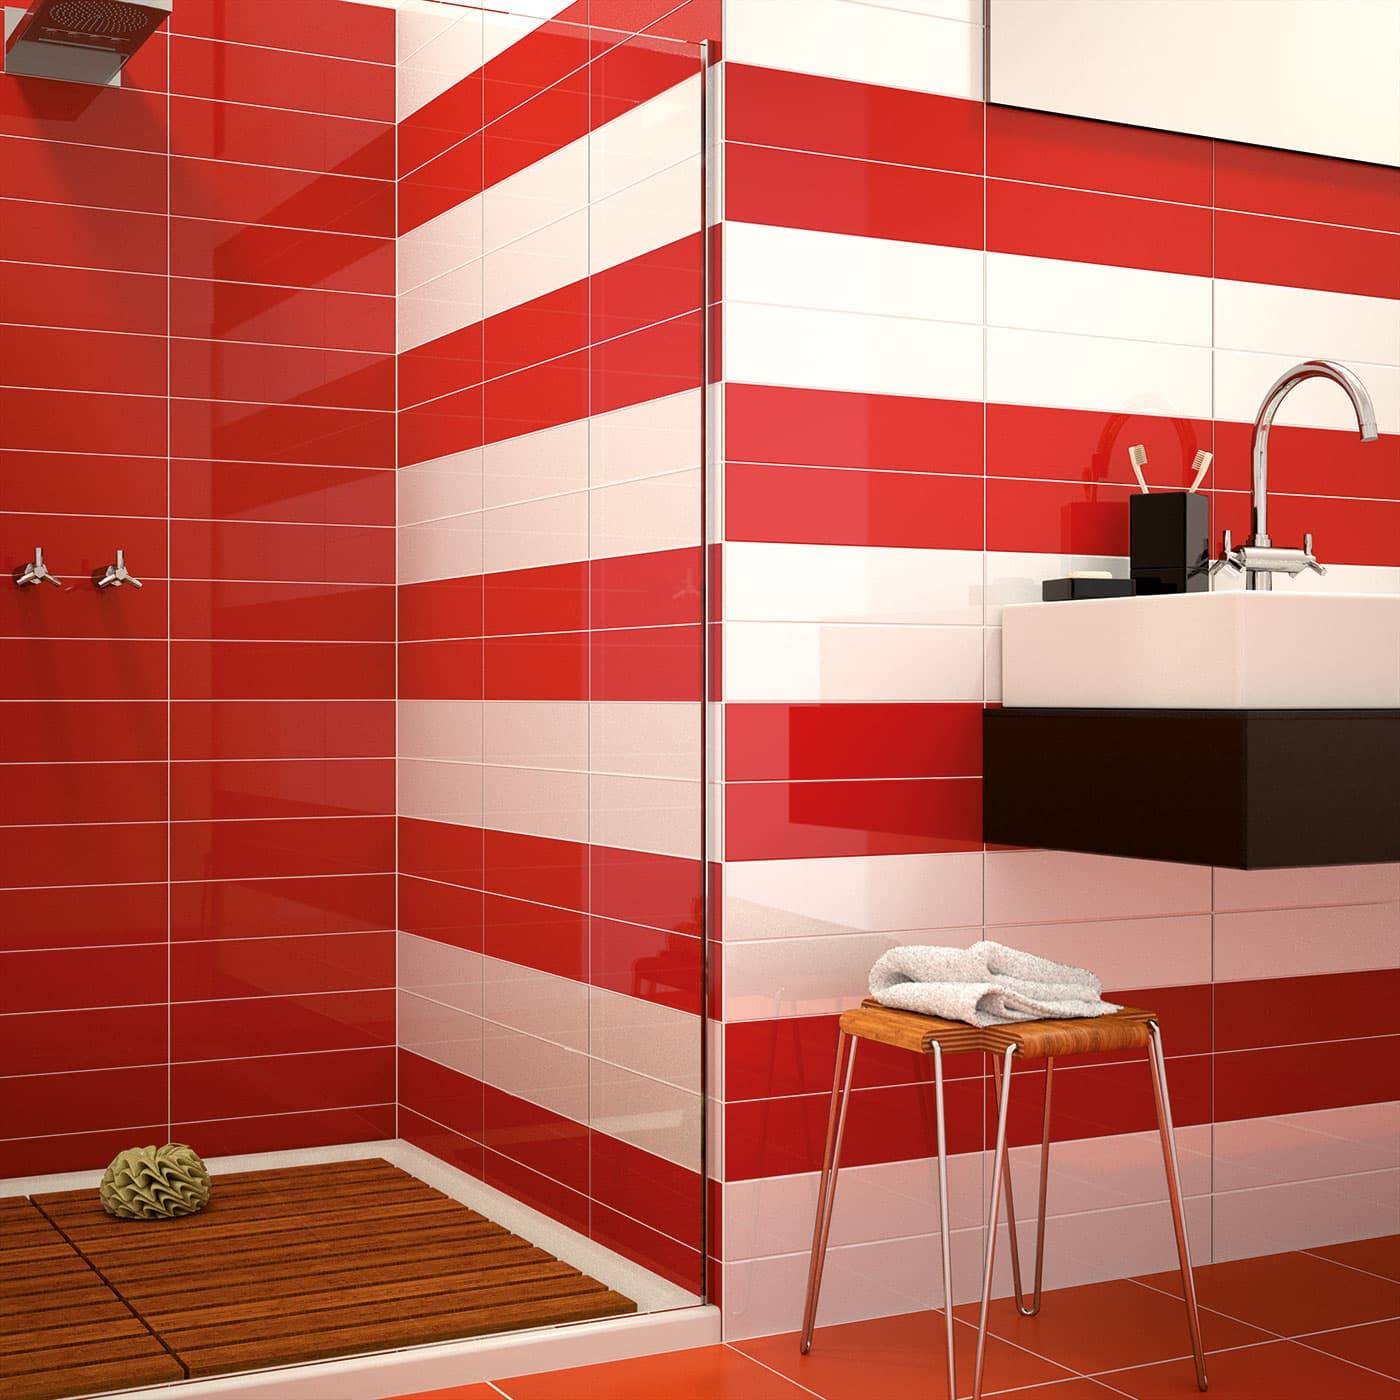 Плитка керамическая стройматериал. Красная плитка для ванной. Плитка для ванной красная с белым. Ванная с красной плиткой. Красный кафель в ванной.